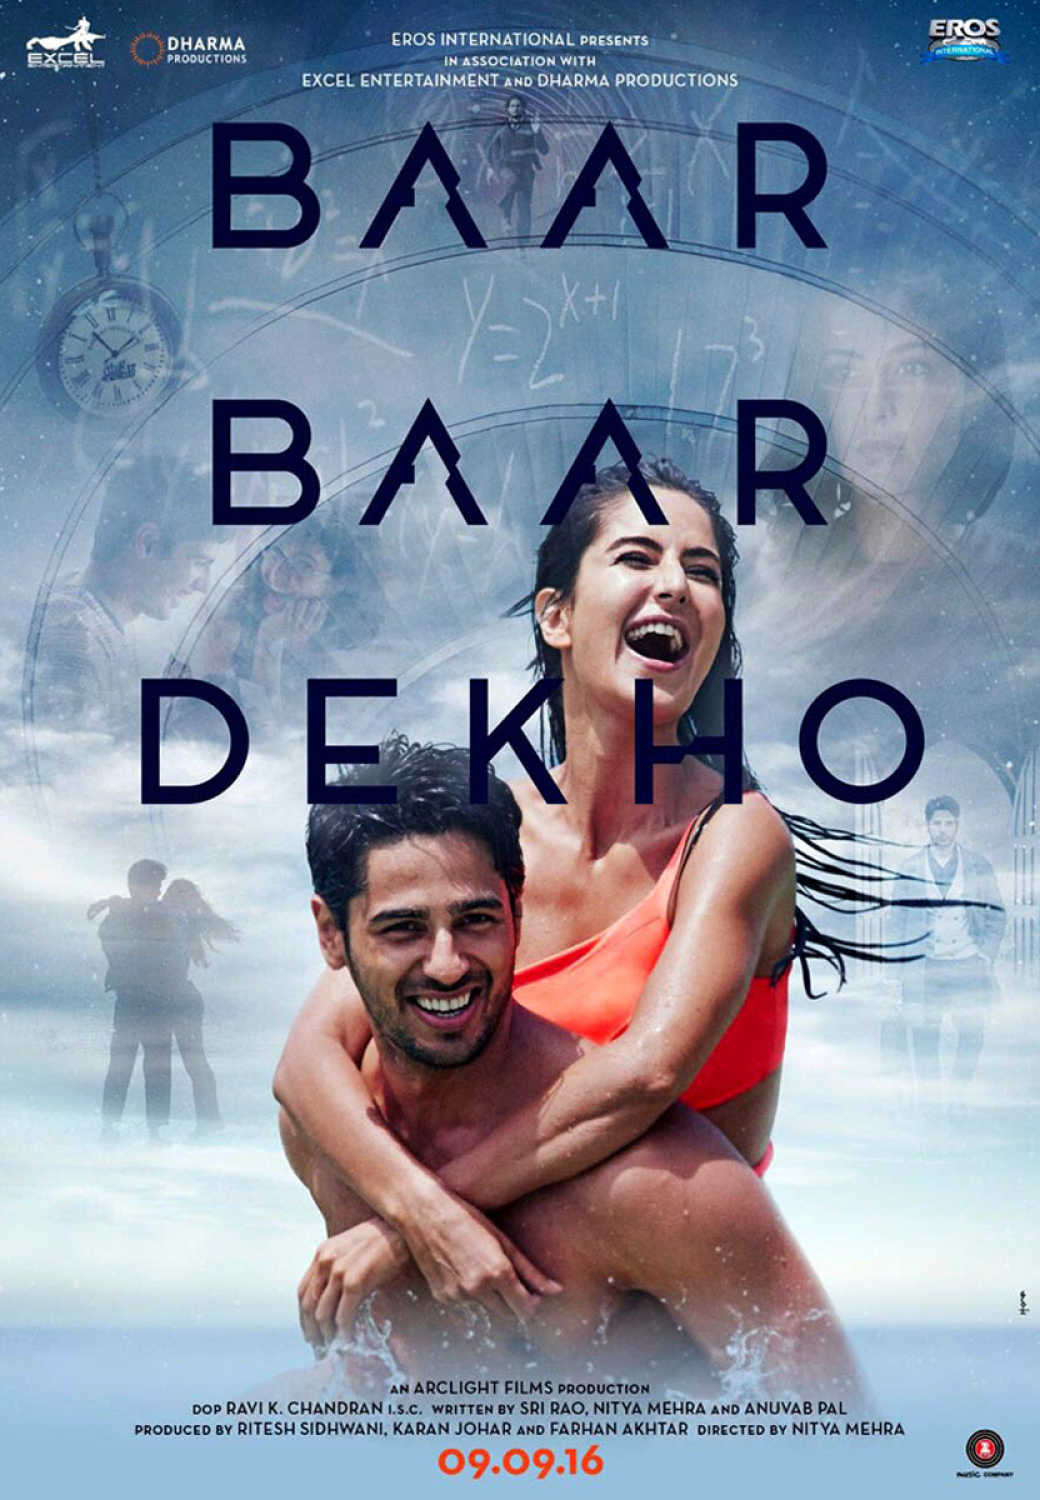 Sidharth-Malhotra-and-Katrina-Kaif-starrer-Baar-Baar-Dekho-poster